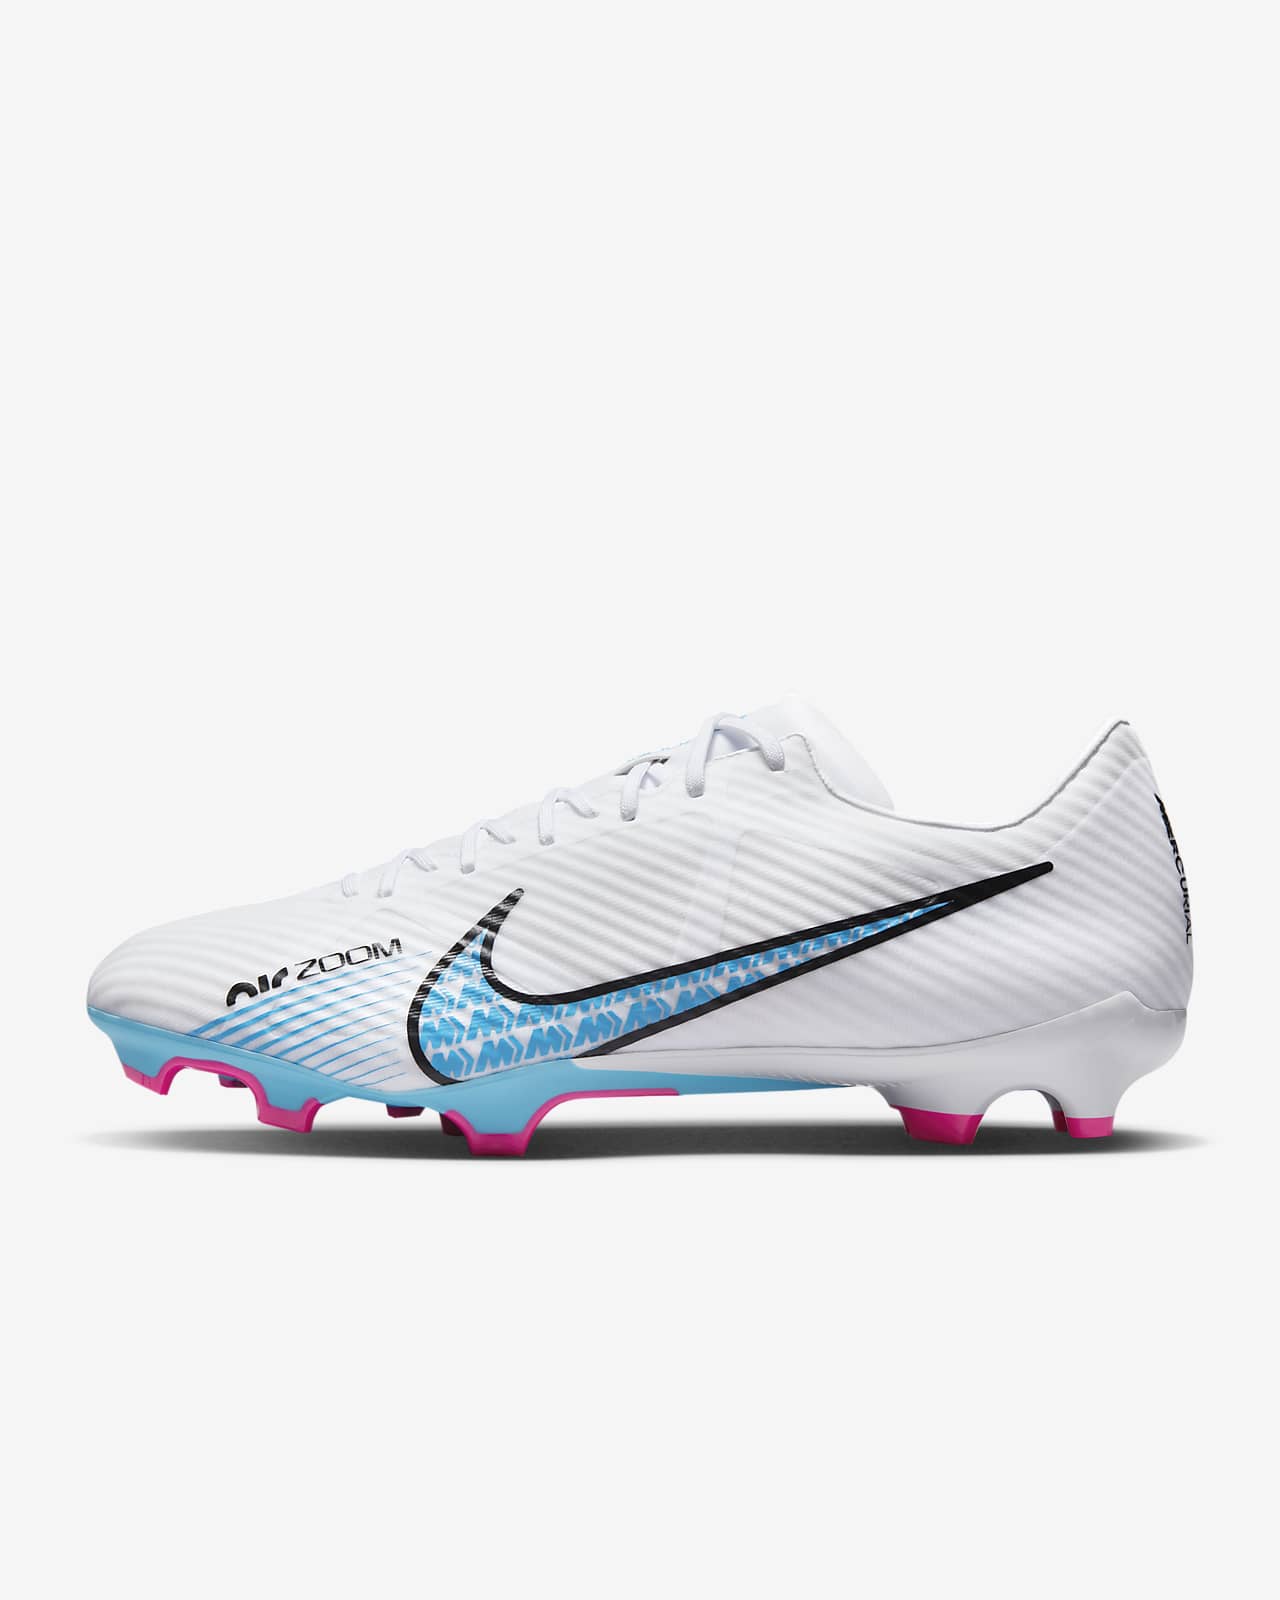 Nike Zoom Football Boots | lupon.gov.ph